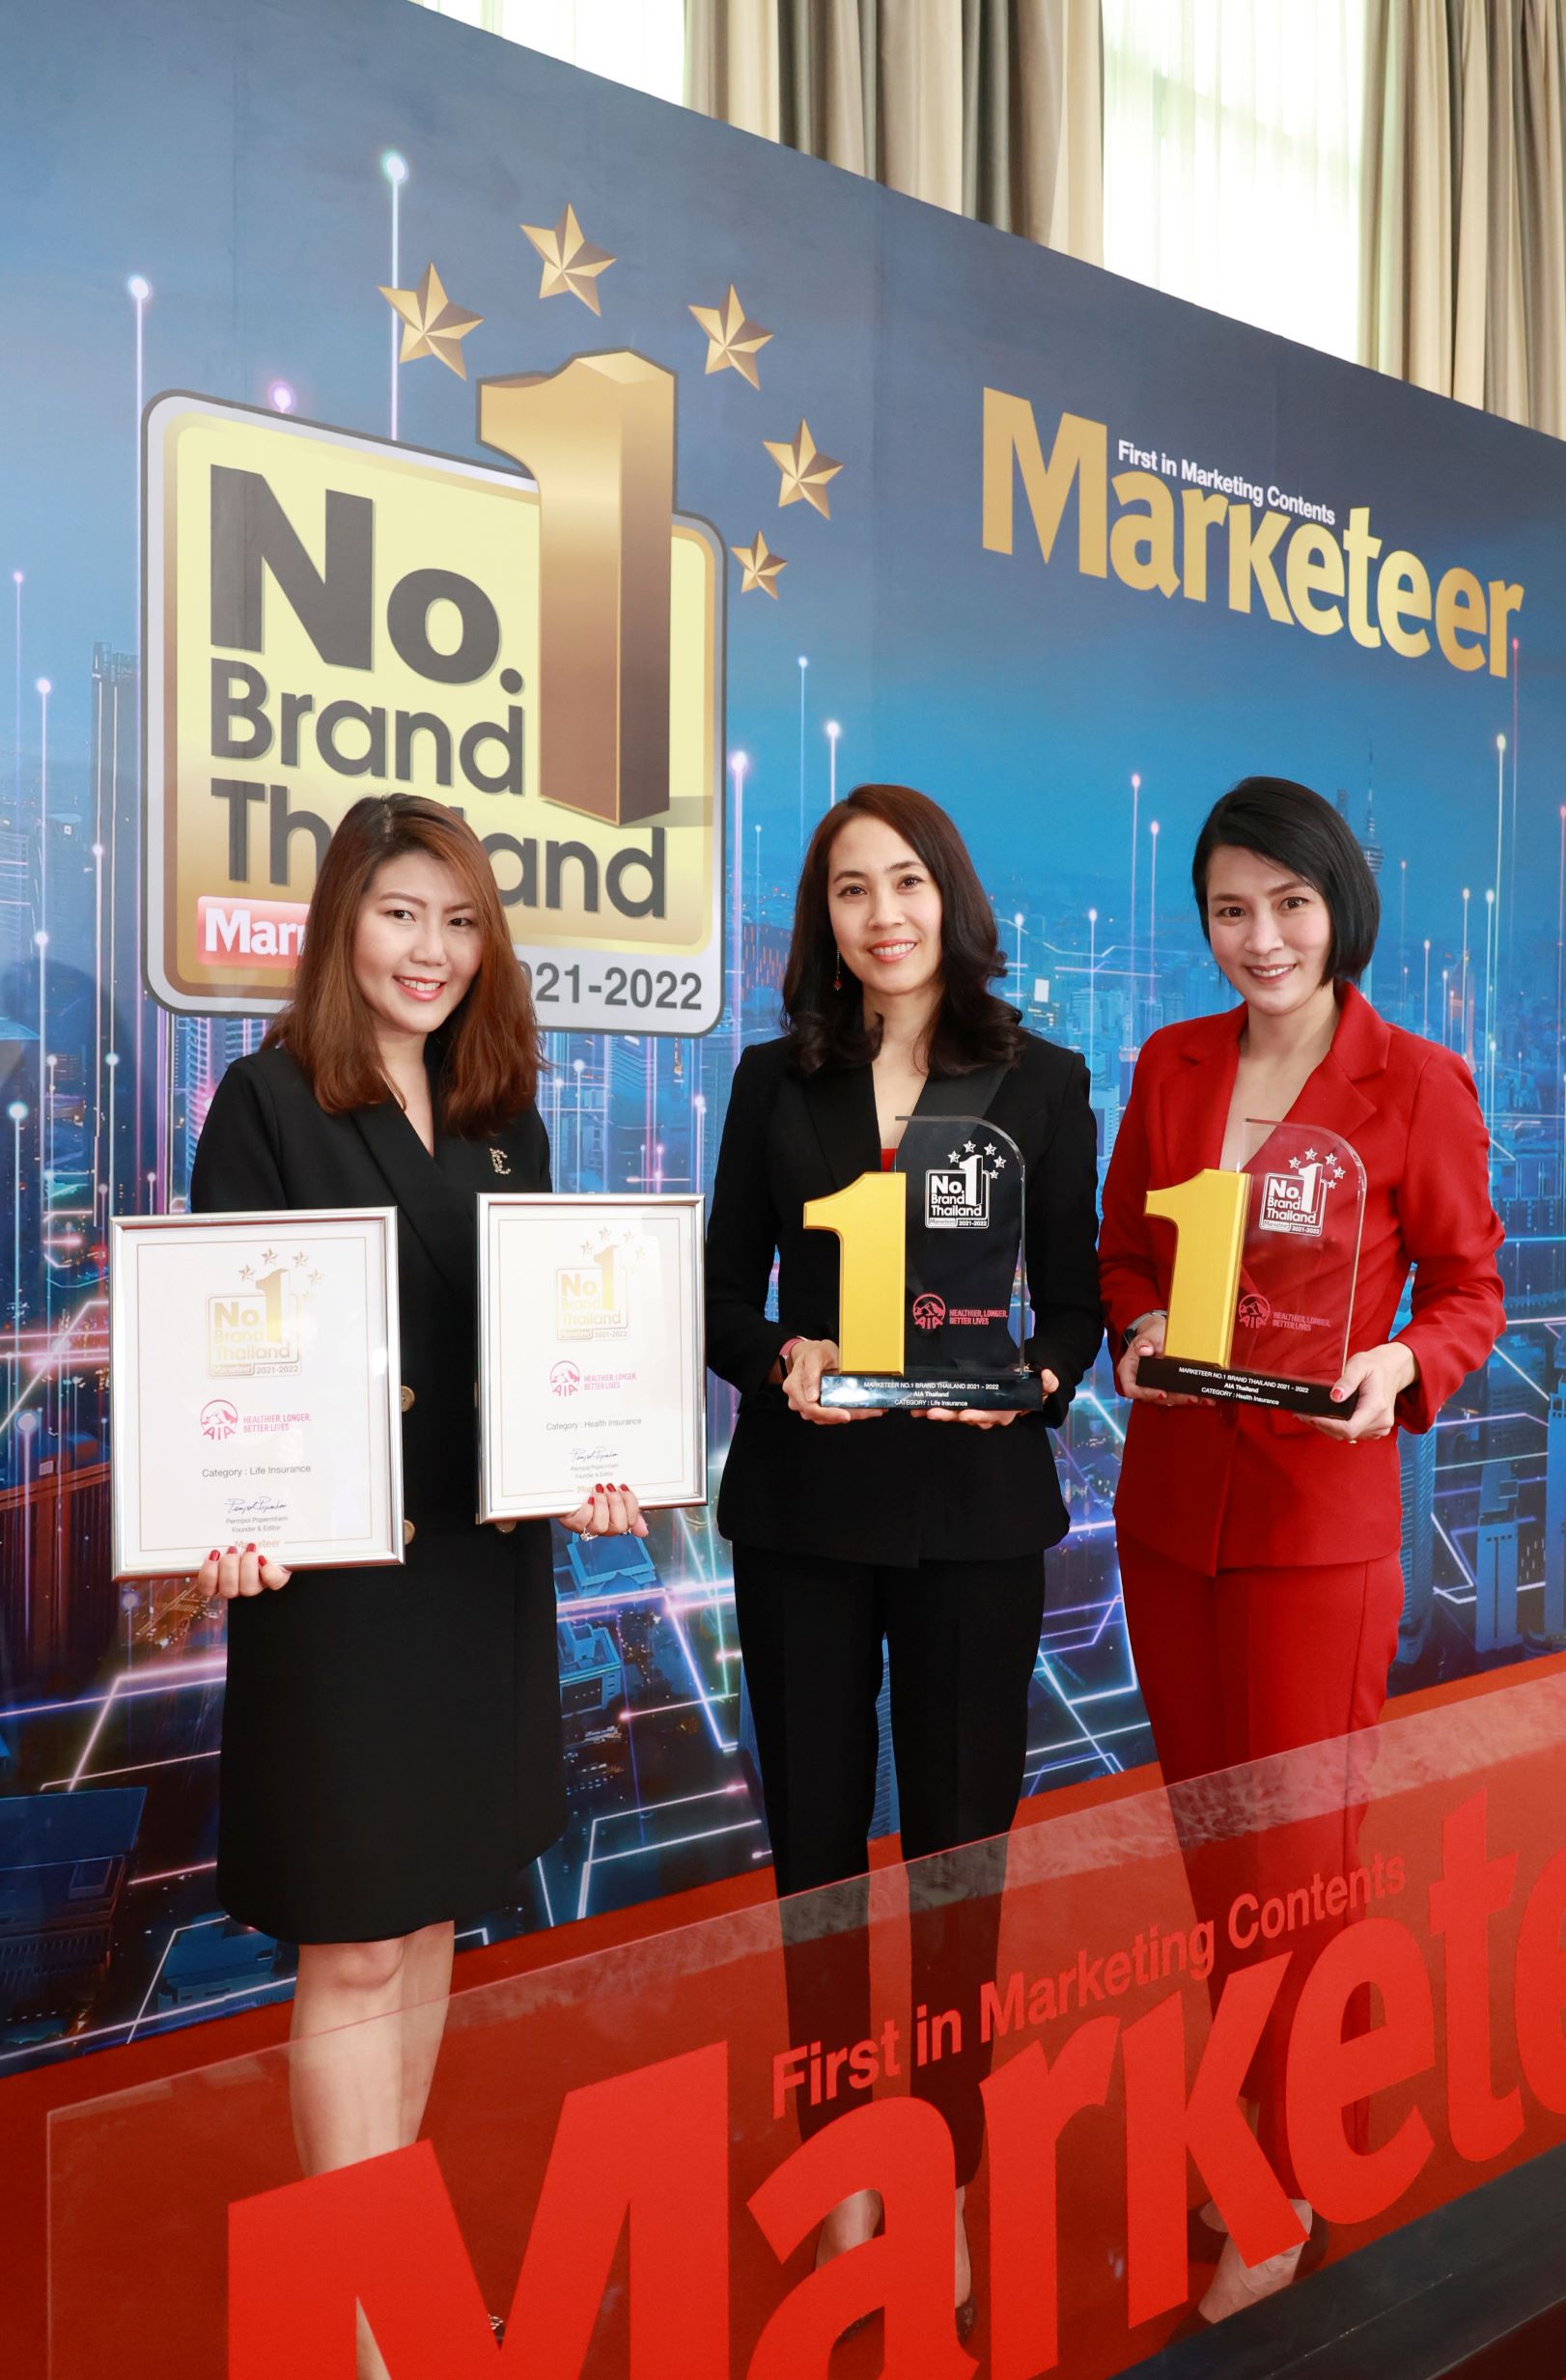 เอไอเอ ประเทศไทย คว้ารางวัล “Marketeer No.1 Brand Thailand 2021–2022” ต่อเนื่องเป็นปีที่ 11